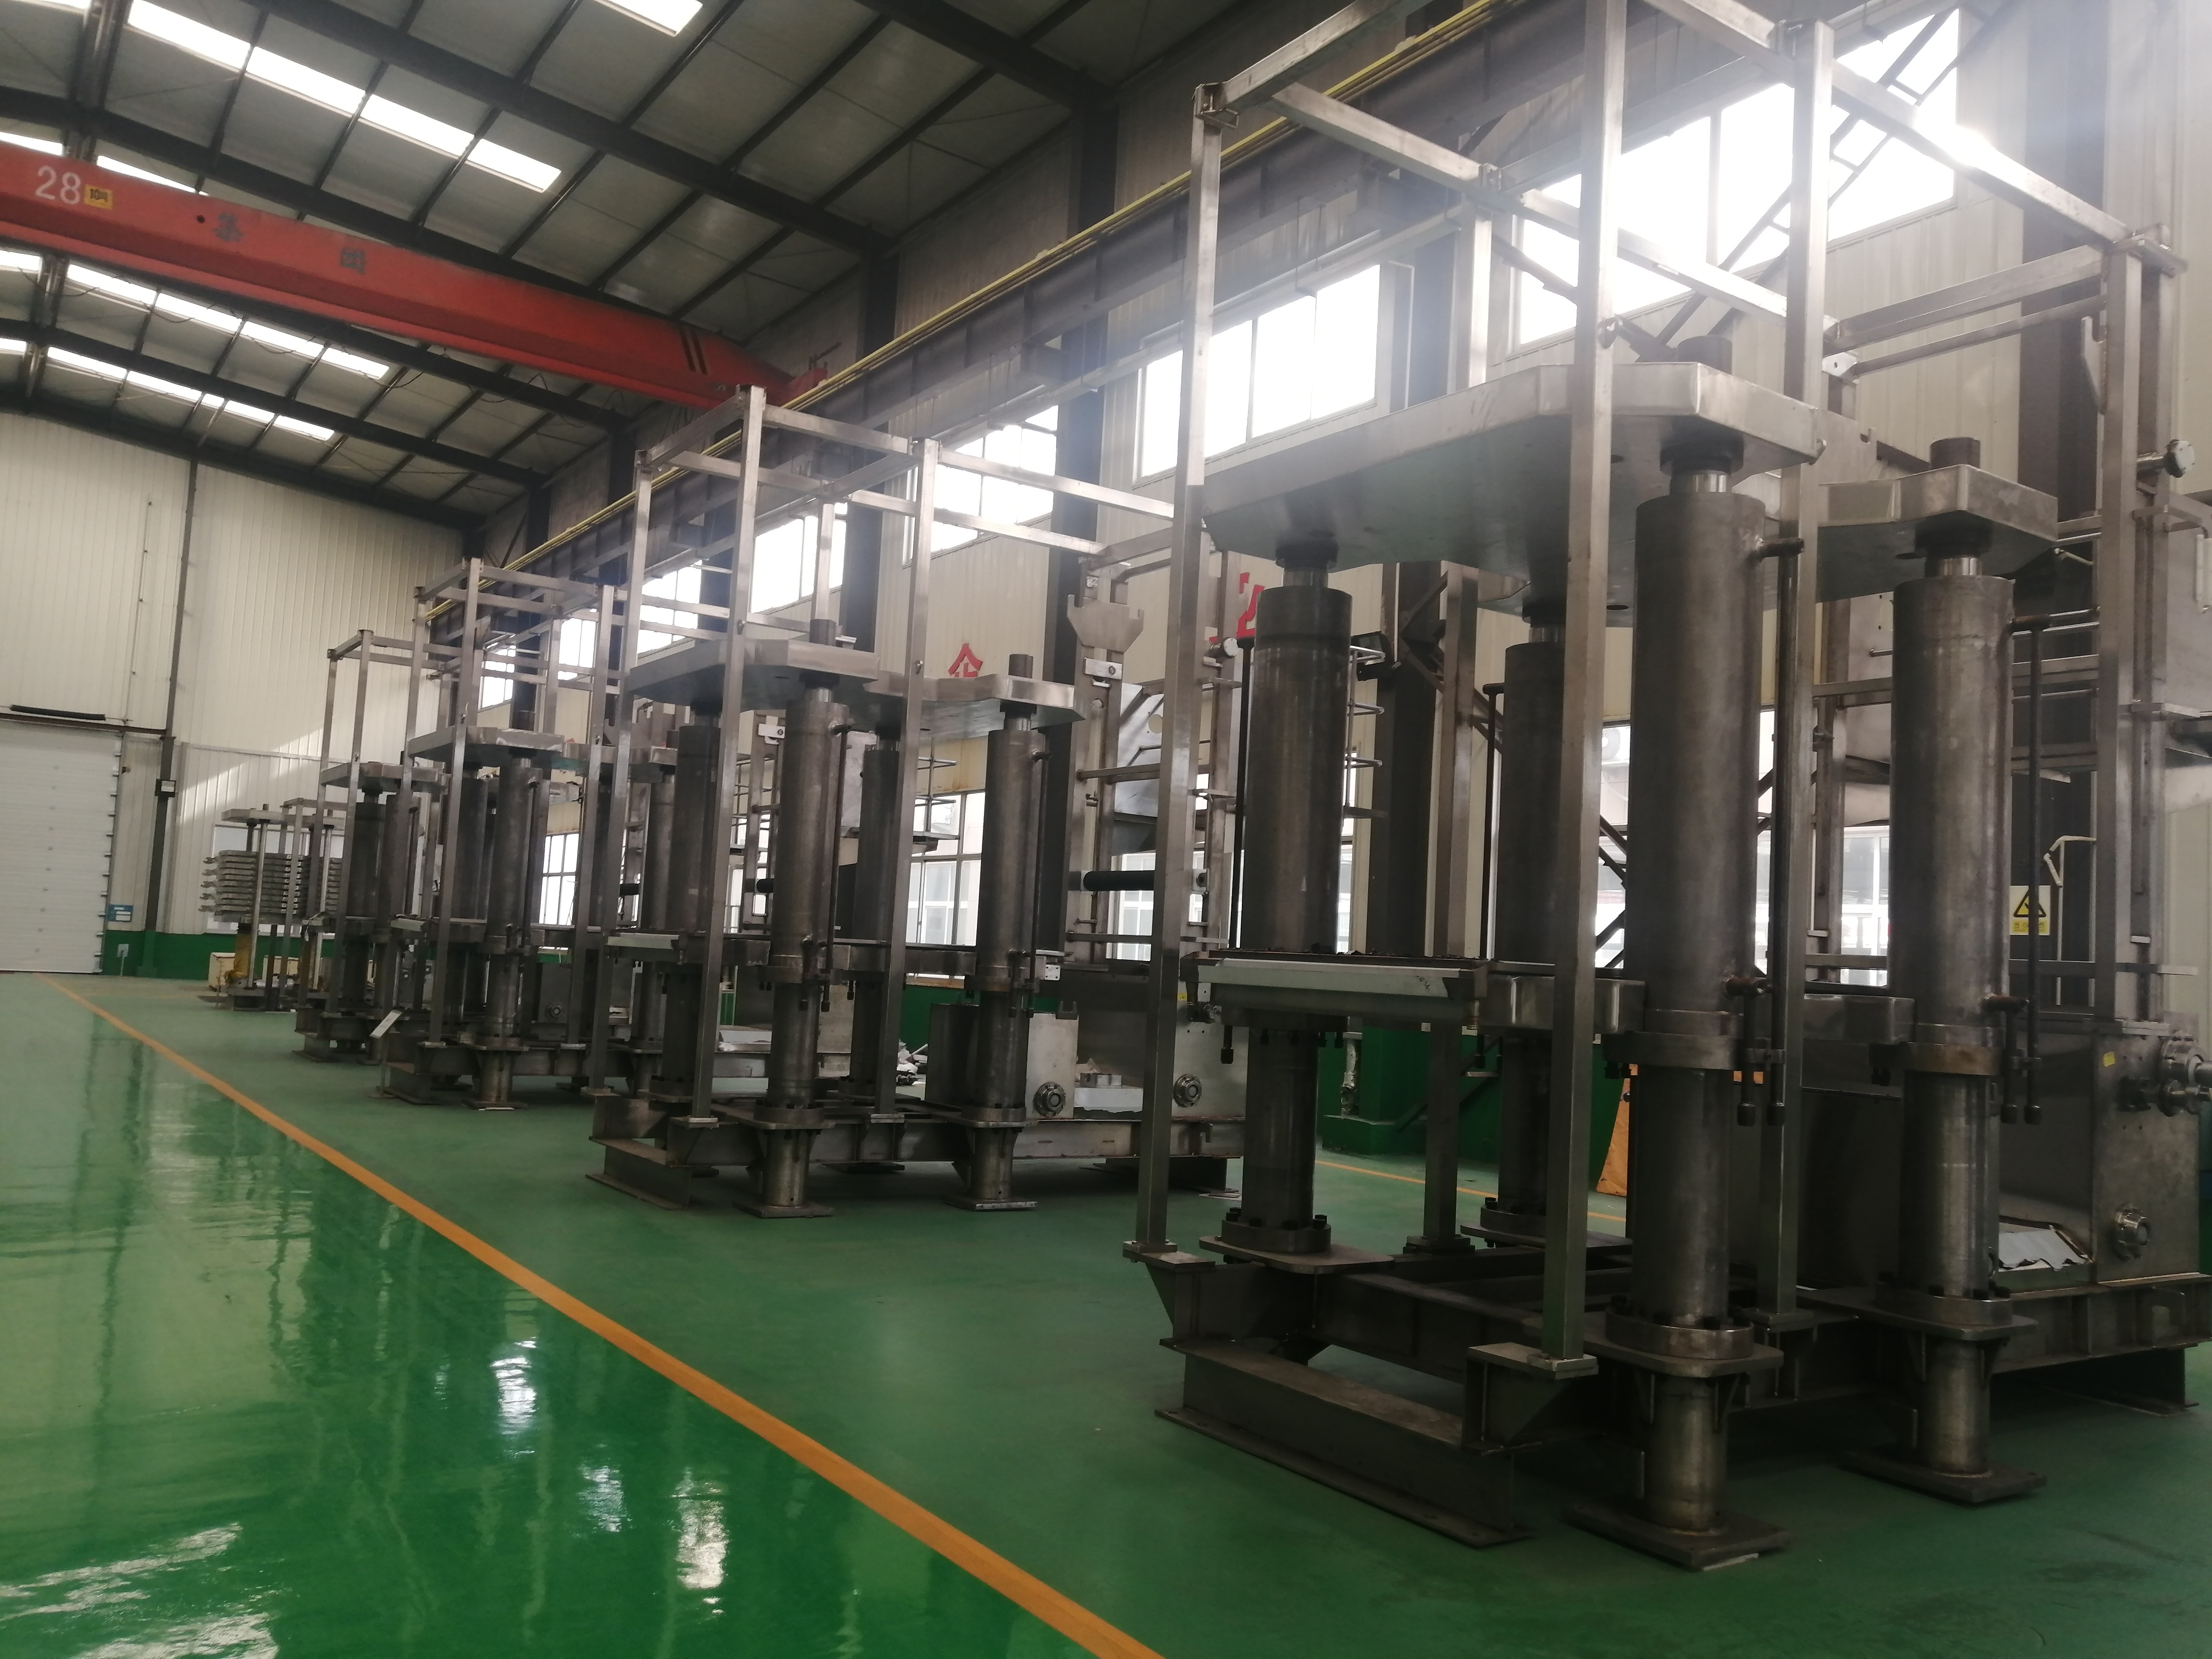 Prensa de filtro automático vertical Toncin Industrial Hvpf